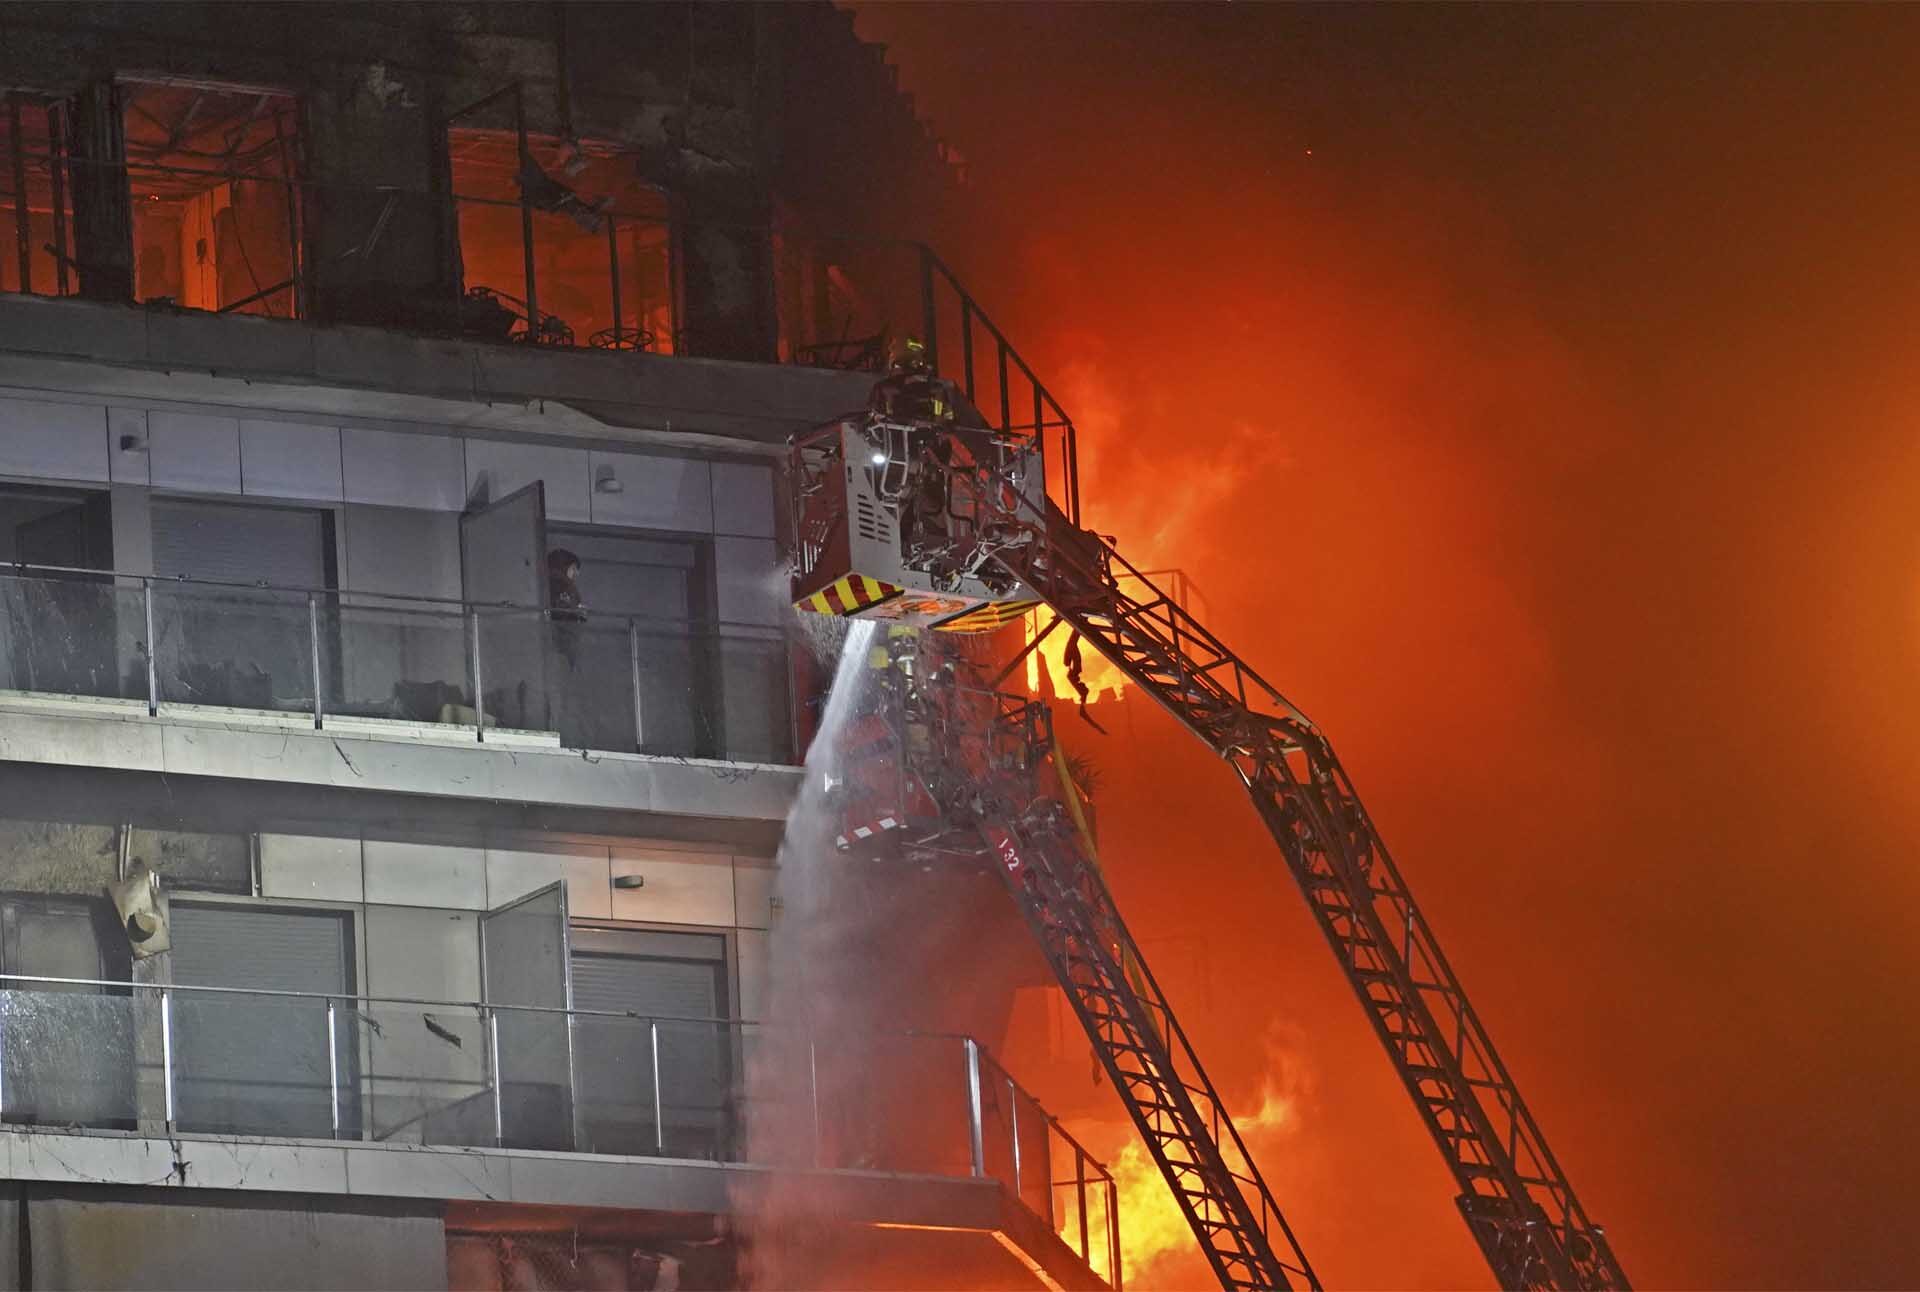 สเปนช็อก “ไฟไหม้เผาวอด” อพาร์ตเมนต์สูง 14 ชั้น สลดดับแล้ว 4 จนท.บาดเจ็บอื้อ